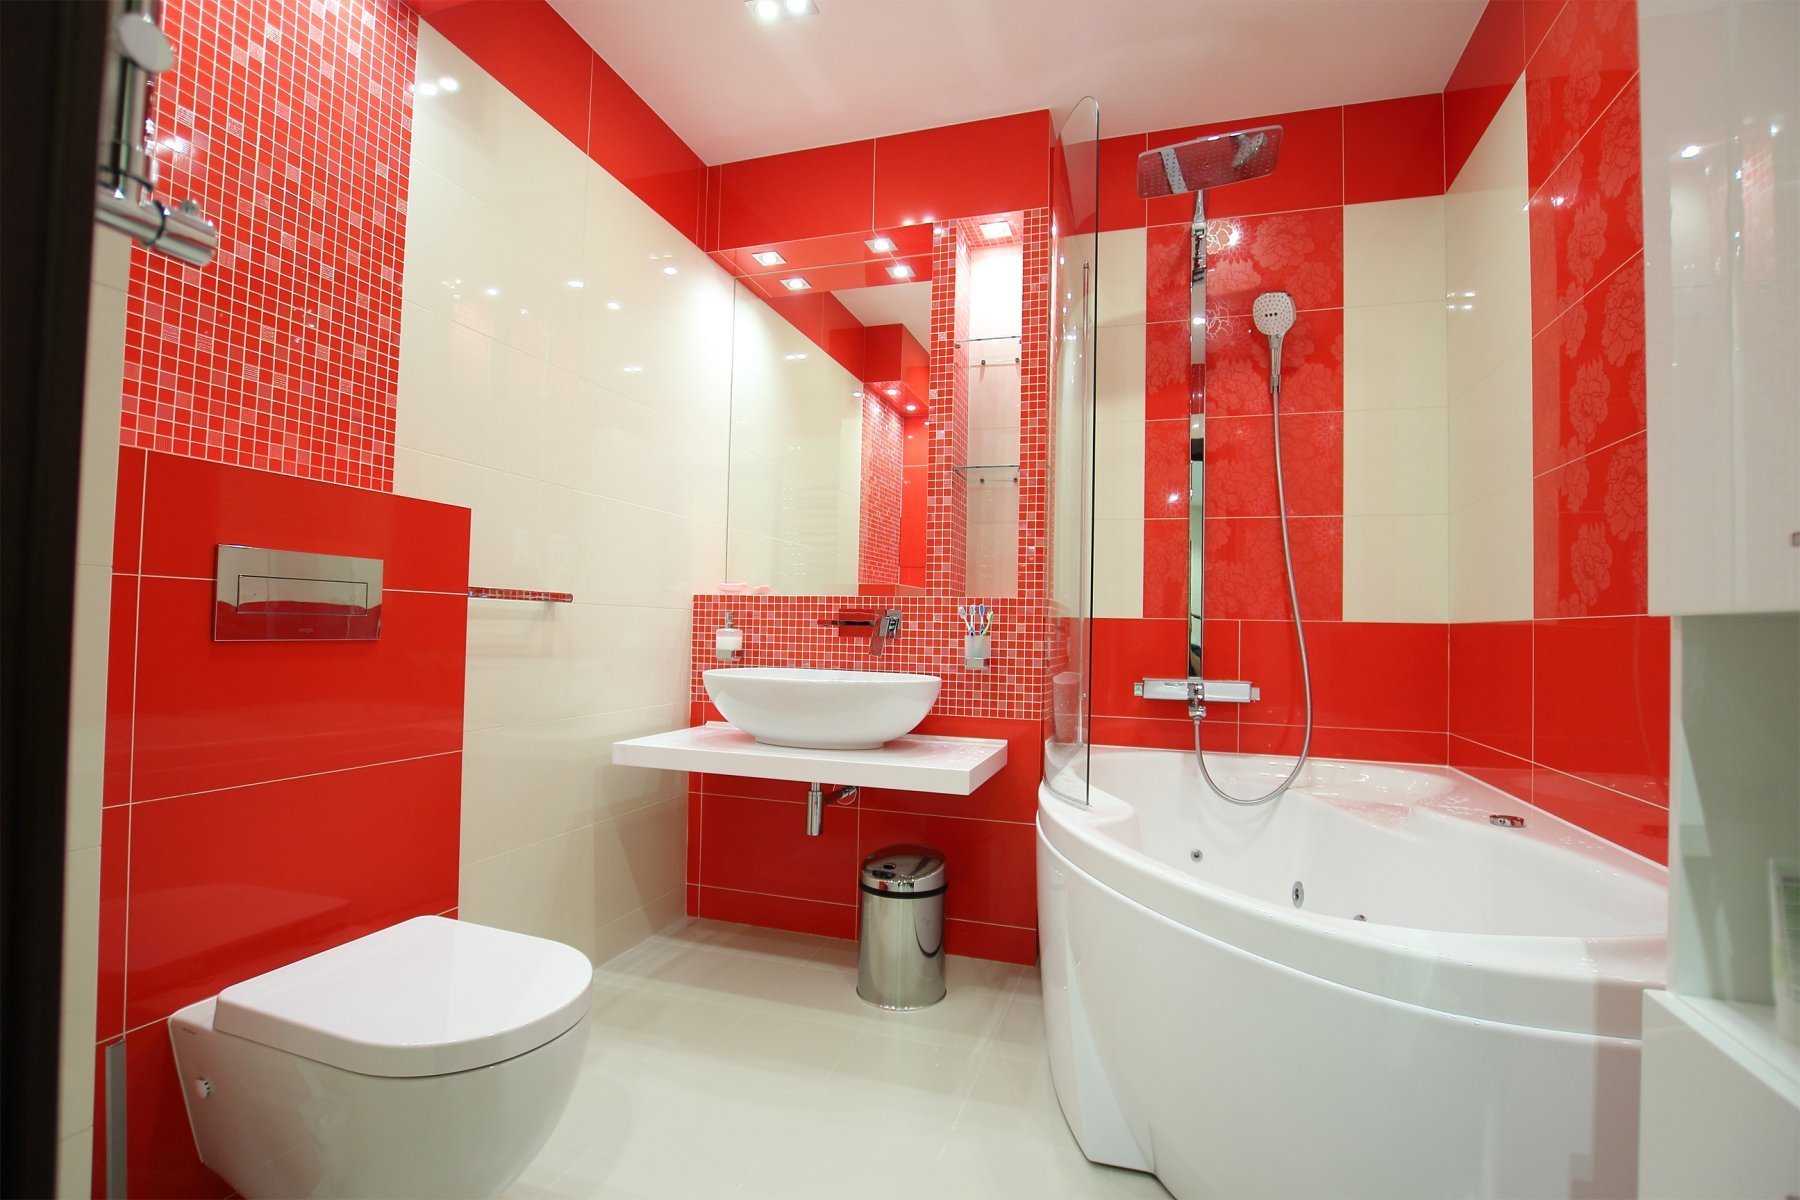 Ванной комнаты распродажа. Ванная в красных тонах. Ванная комната под ключ. Ванная в Красном цвете. Ванная комната в Красном цвете.